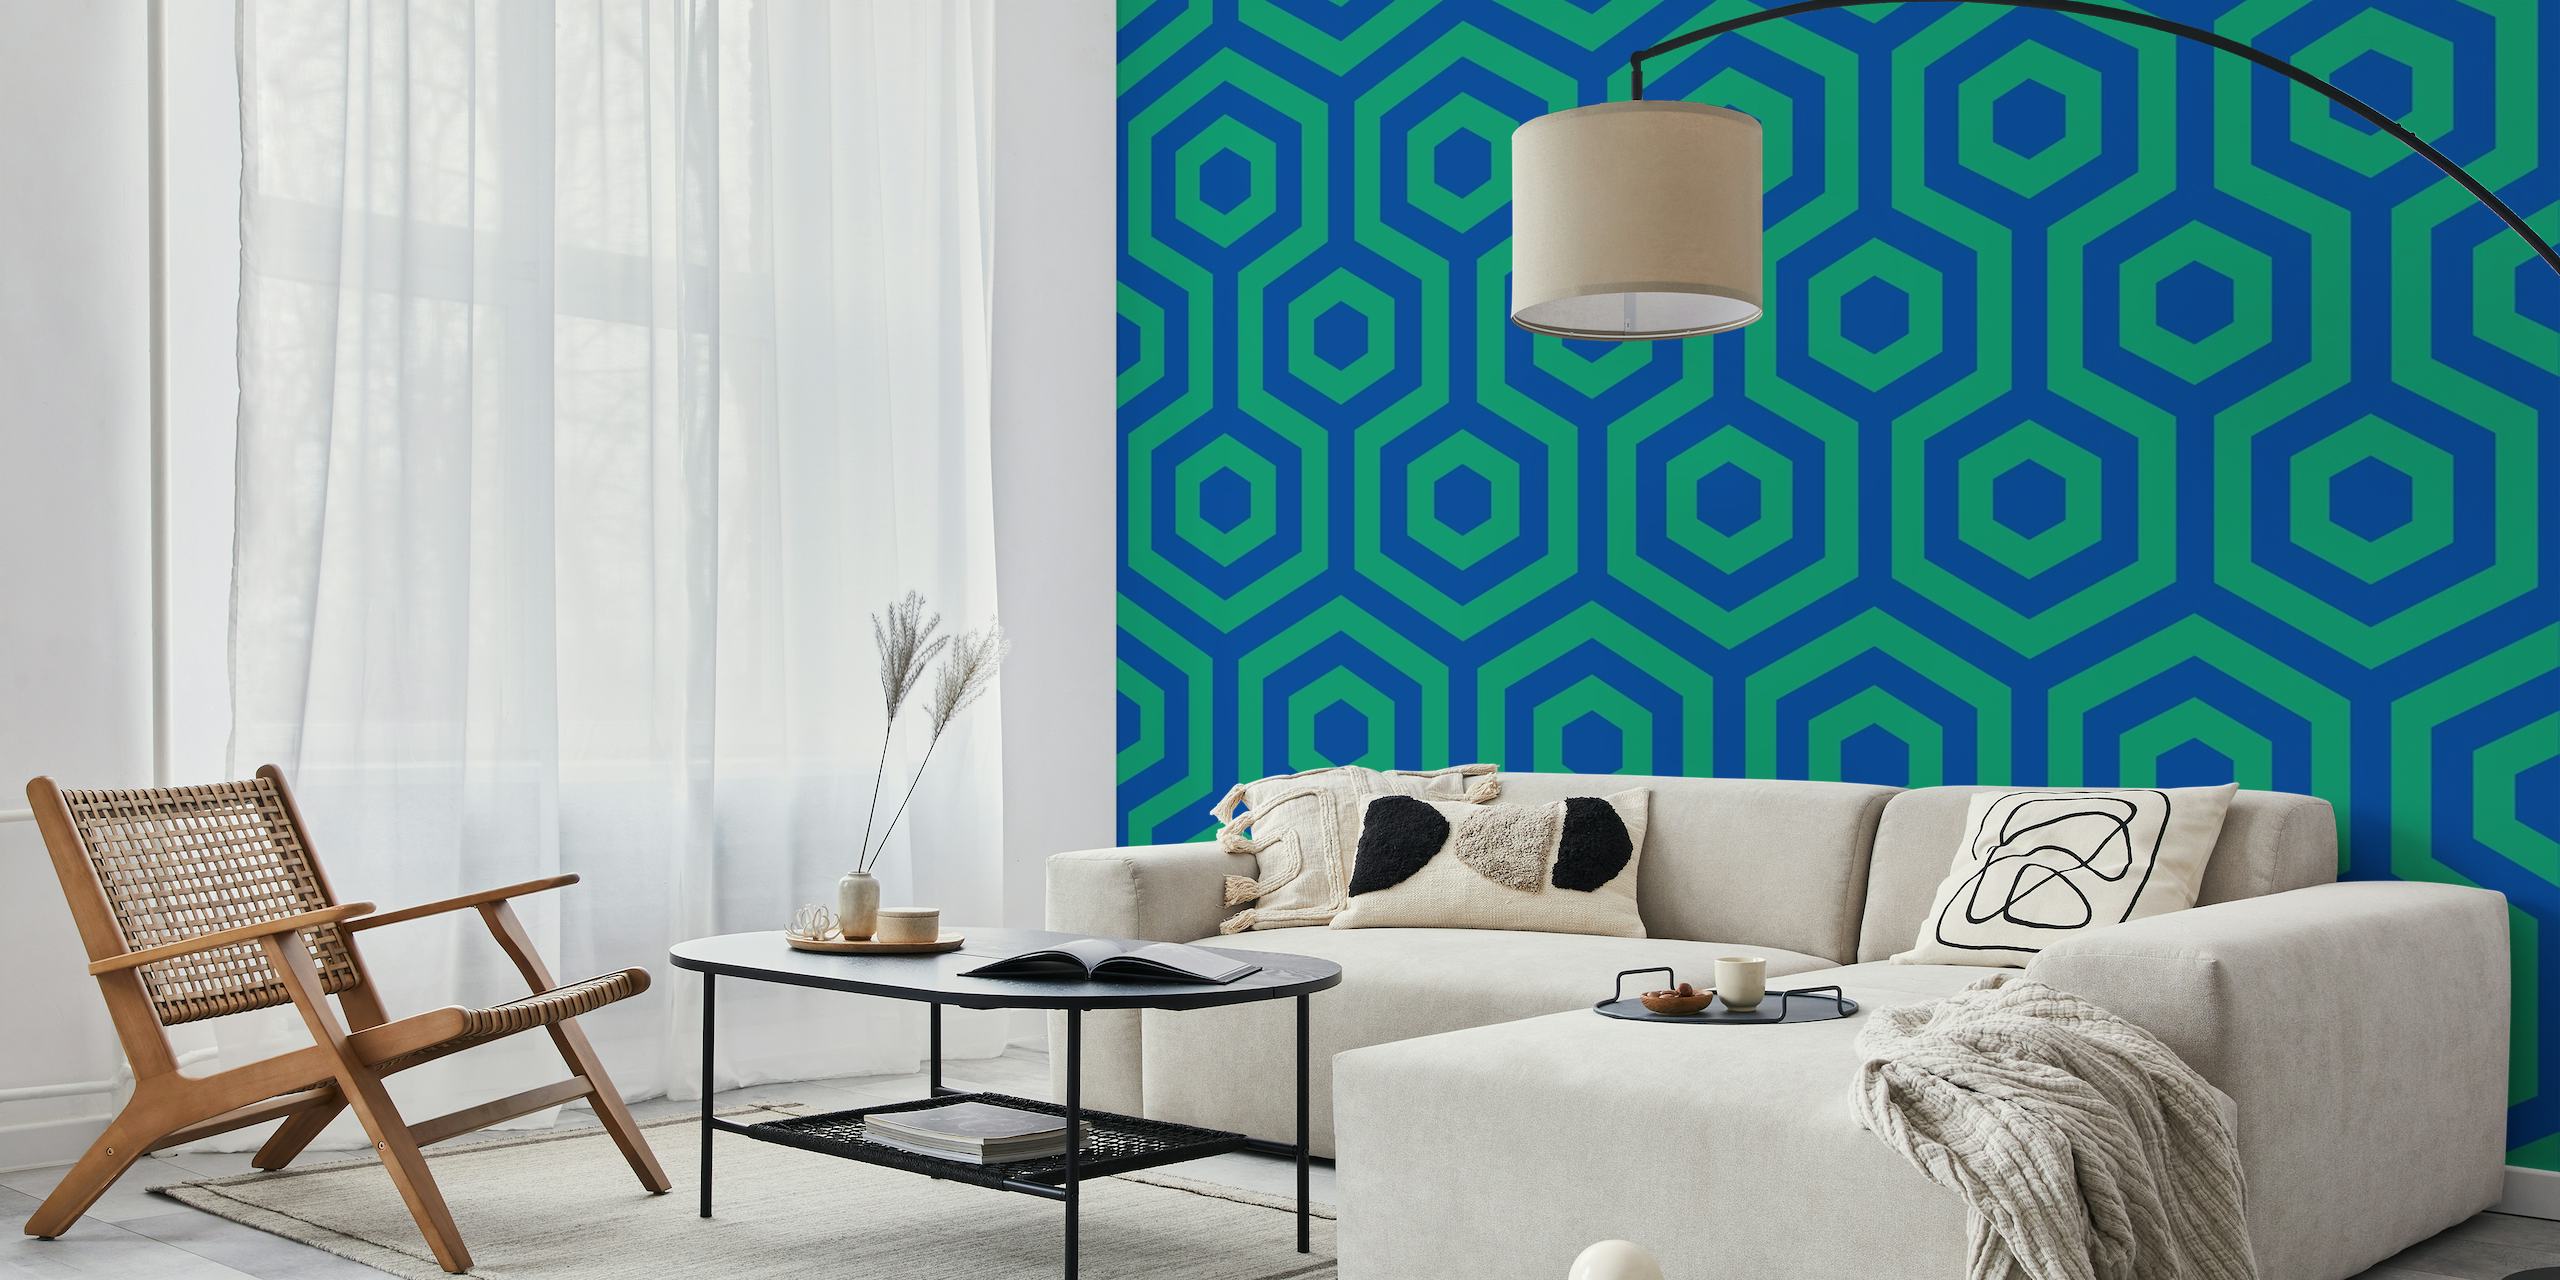 Zidna slika s geometrijskim uzorkom košnice u plavoj i zelenoj boji